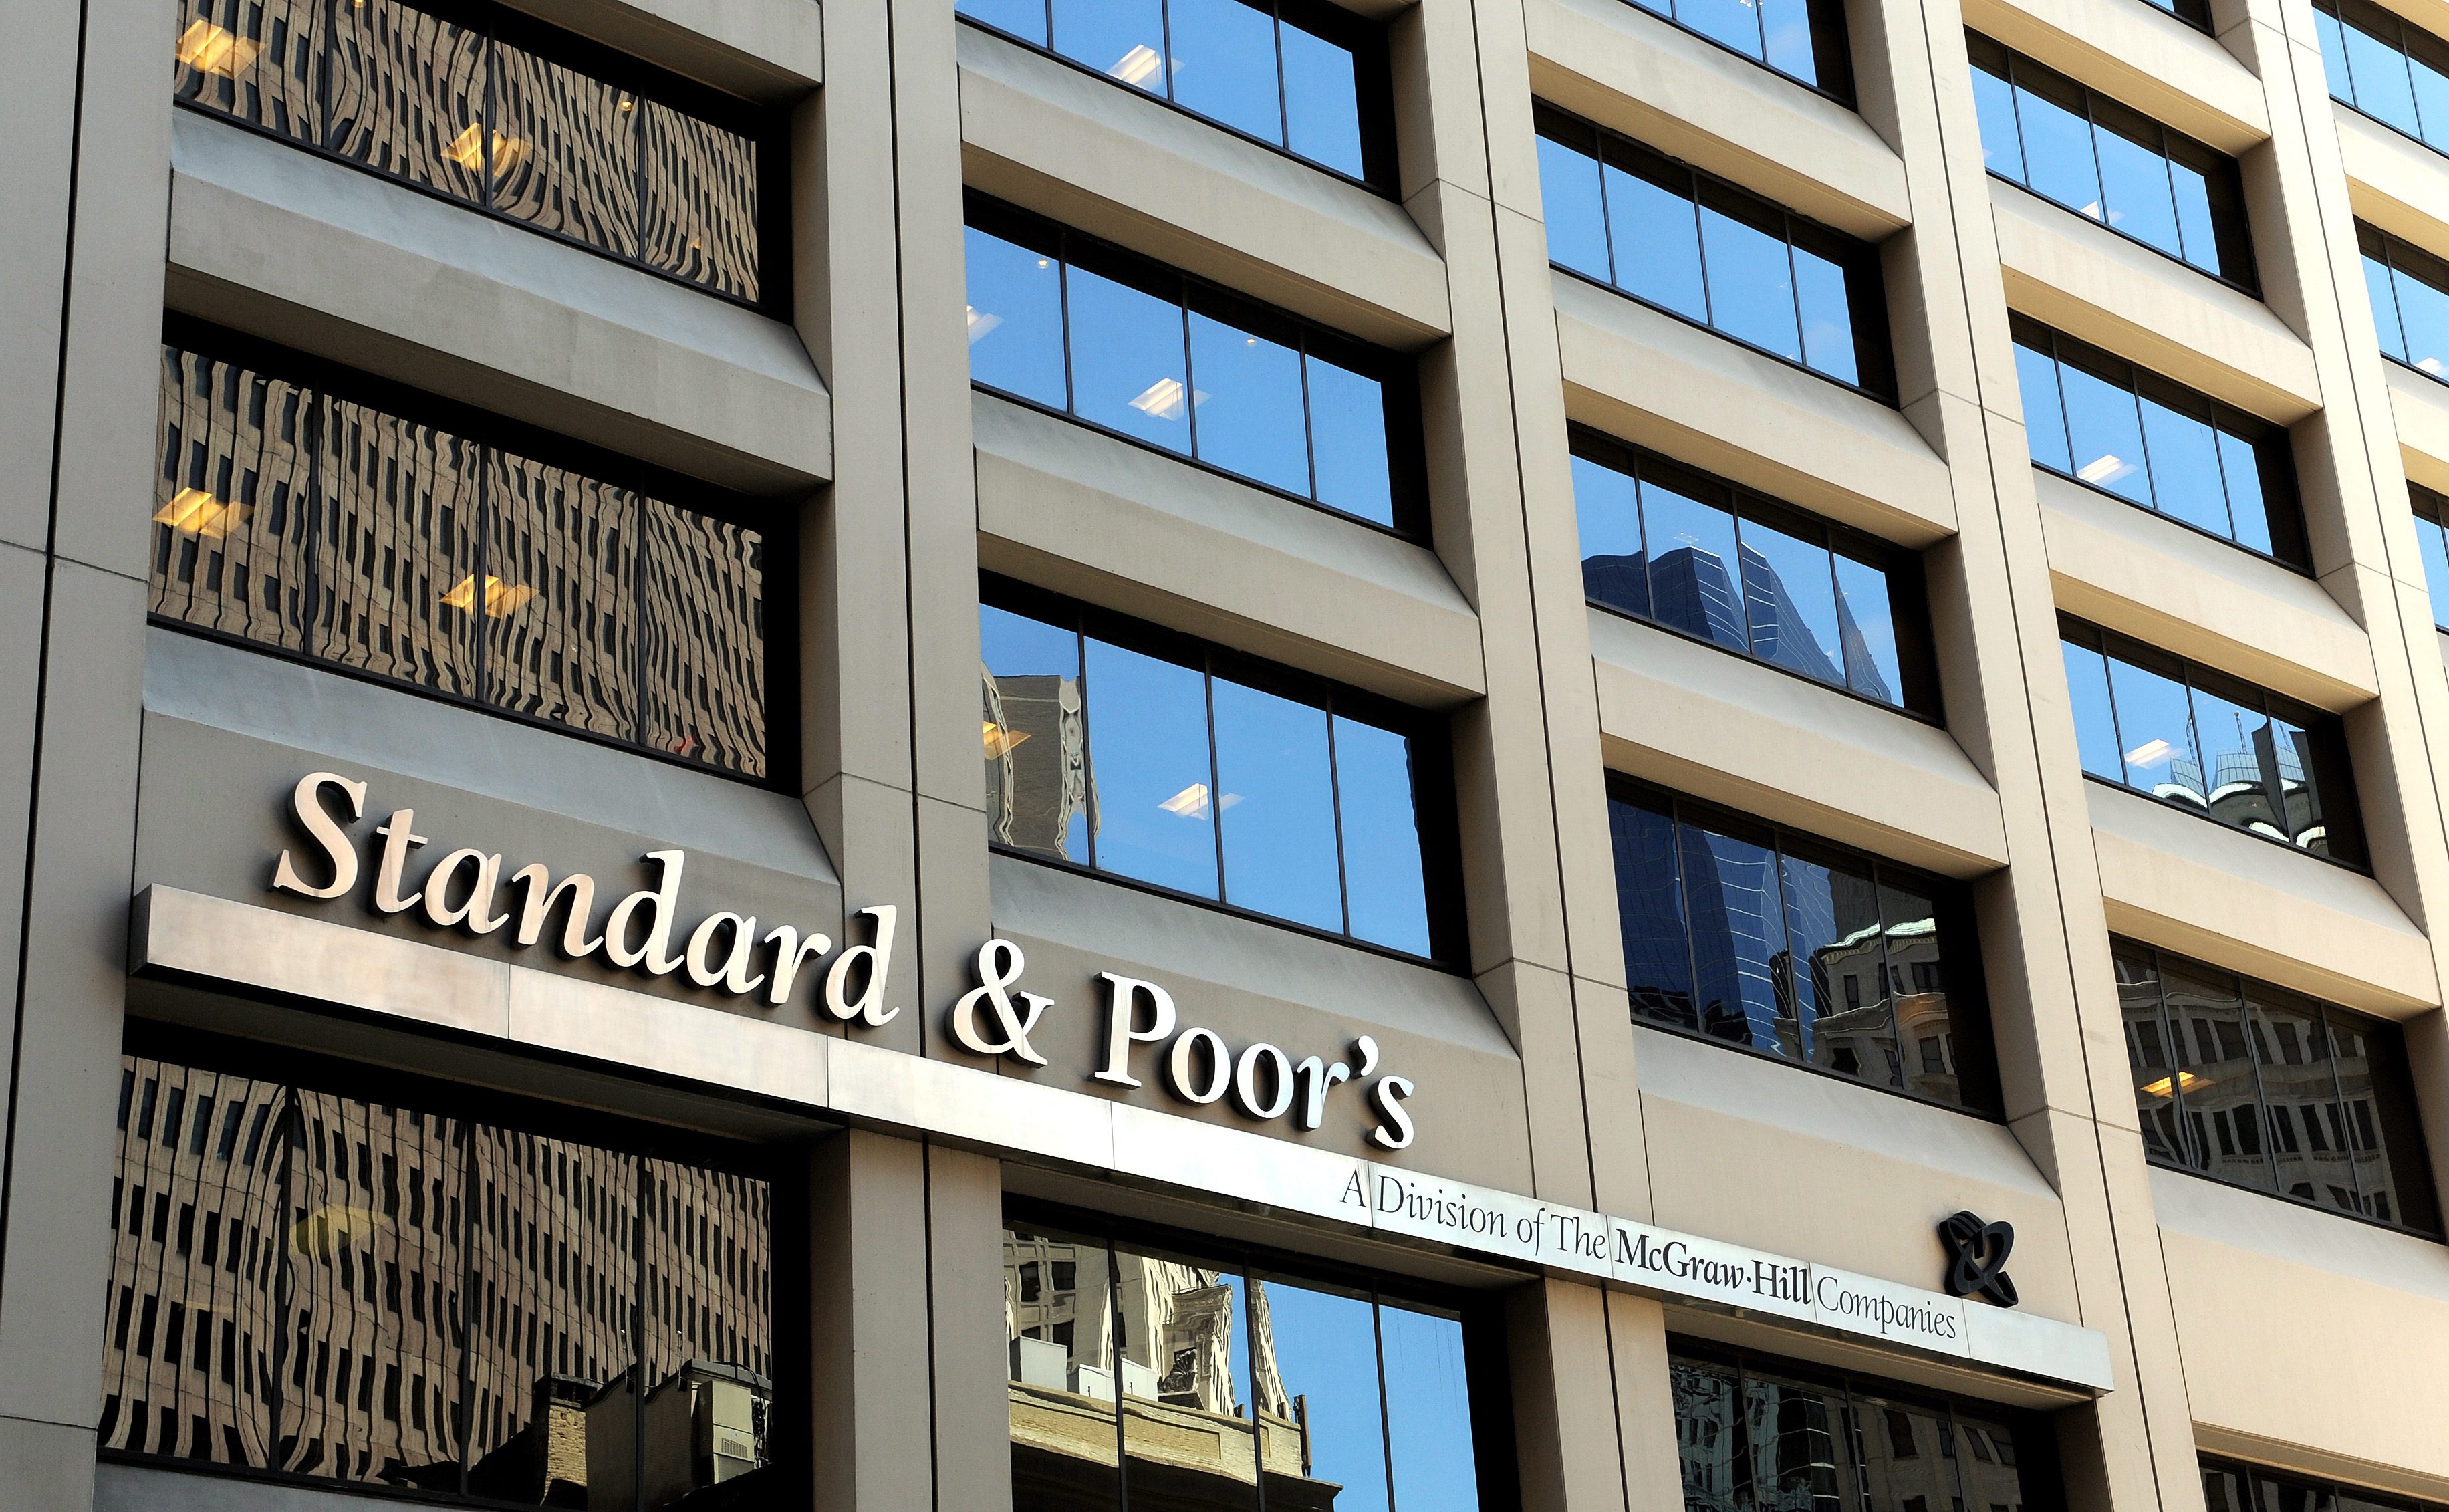 Според Standard & Poor’s НЕК дължи на БЕХ 960 млн. лв., а външните дългове на компанията възлизат на над 100 млн. евро